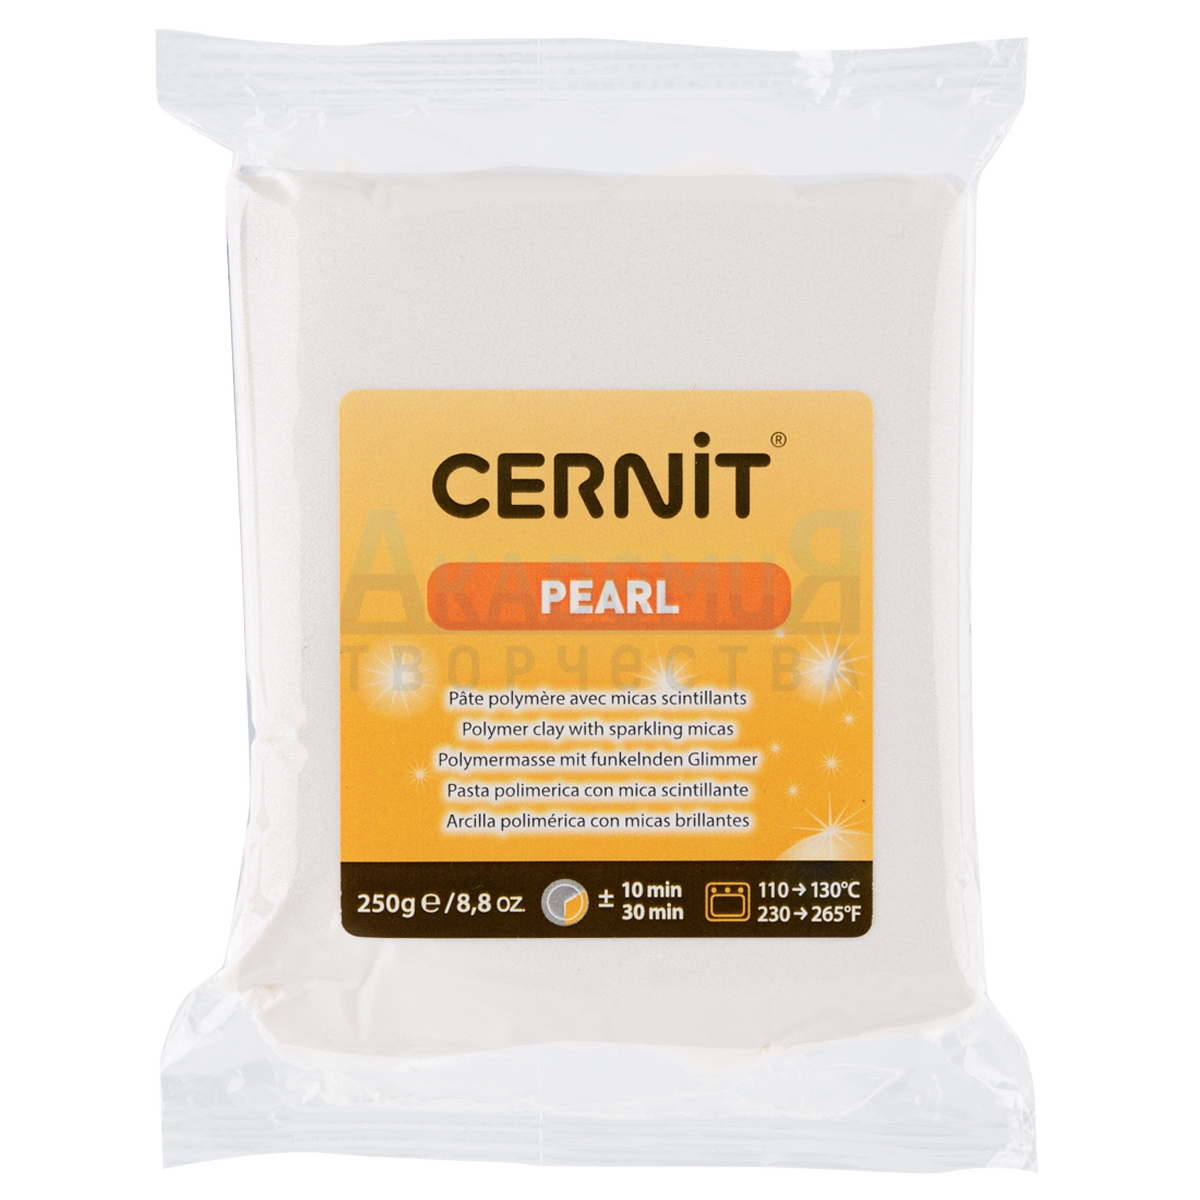 Cernit Pearl полимерная глина 085 цвет жемчужно-белый 250 гр.